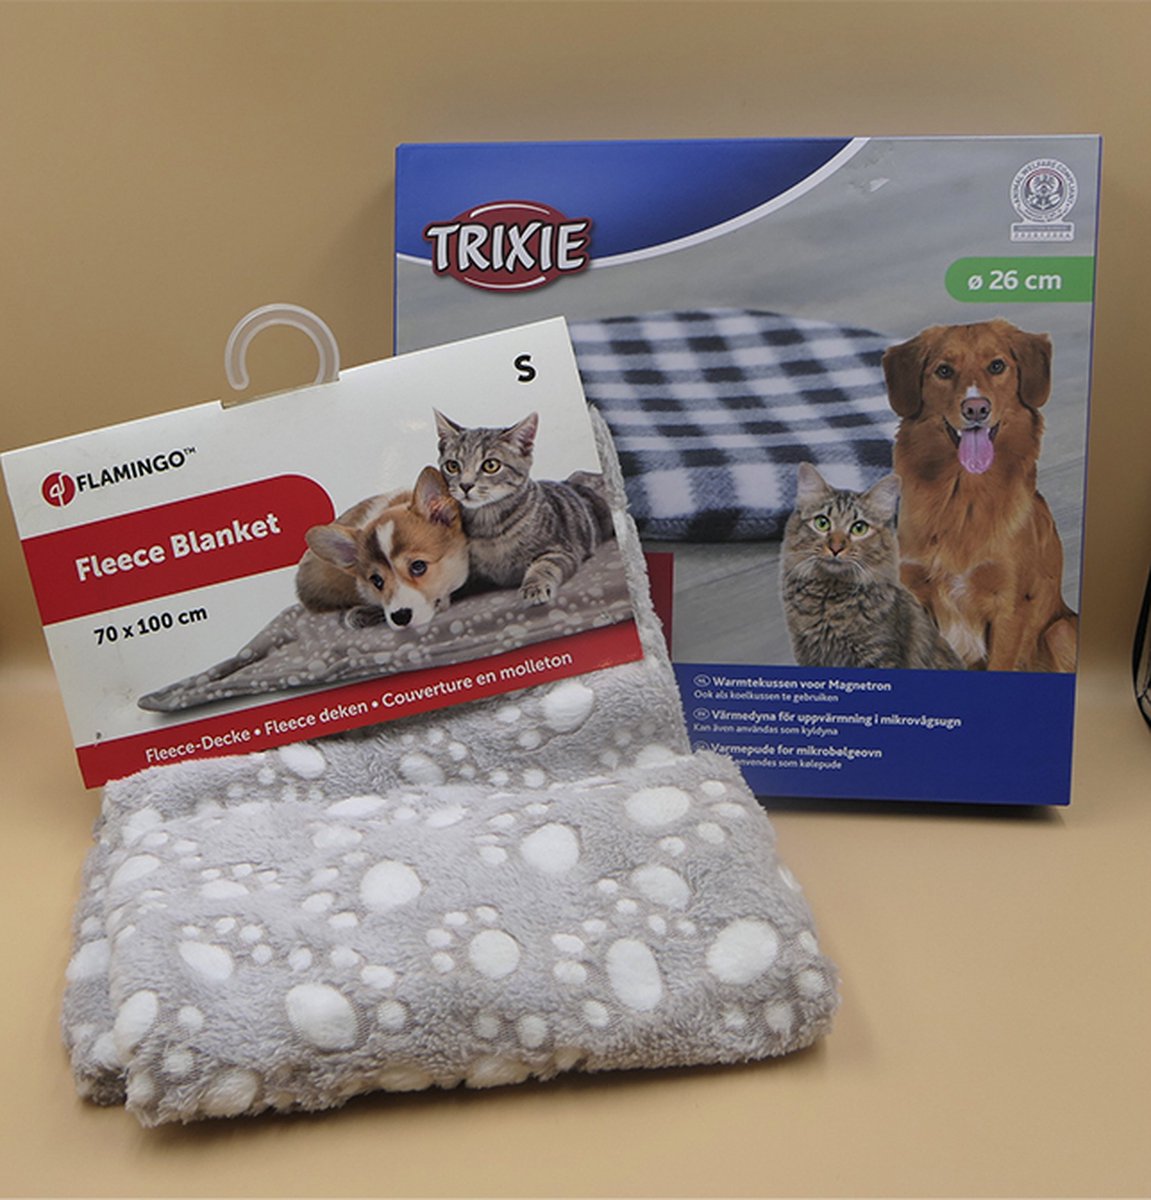 Trixie warmteschijf / koelteschijf - 26 cm snuggle safe met cover + fleece 70 x 100 cm, zacht, varierende kleuren combi